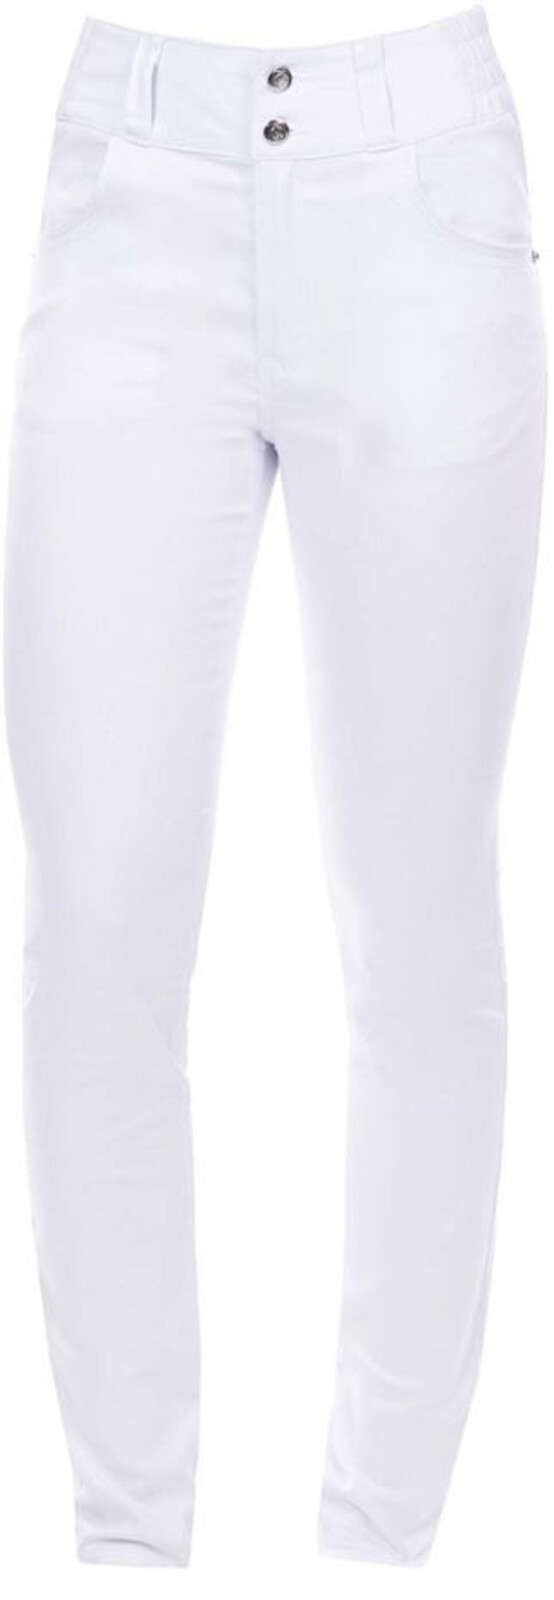 Dámske elastické nohavice Ardon Jasvena - veľkosť: 50, farba: biela